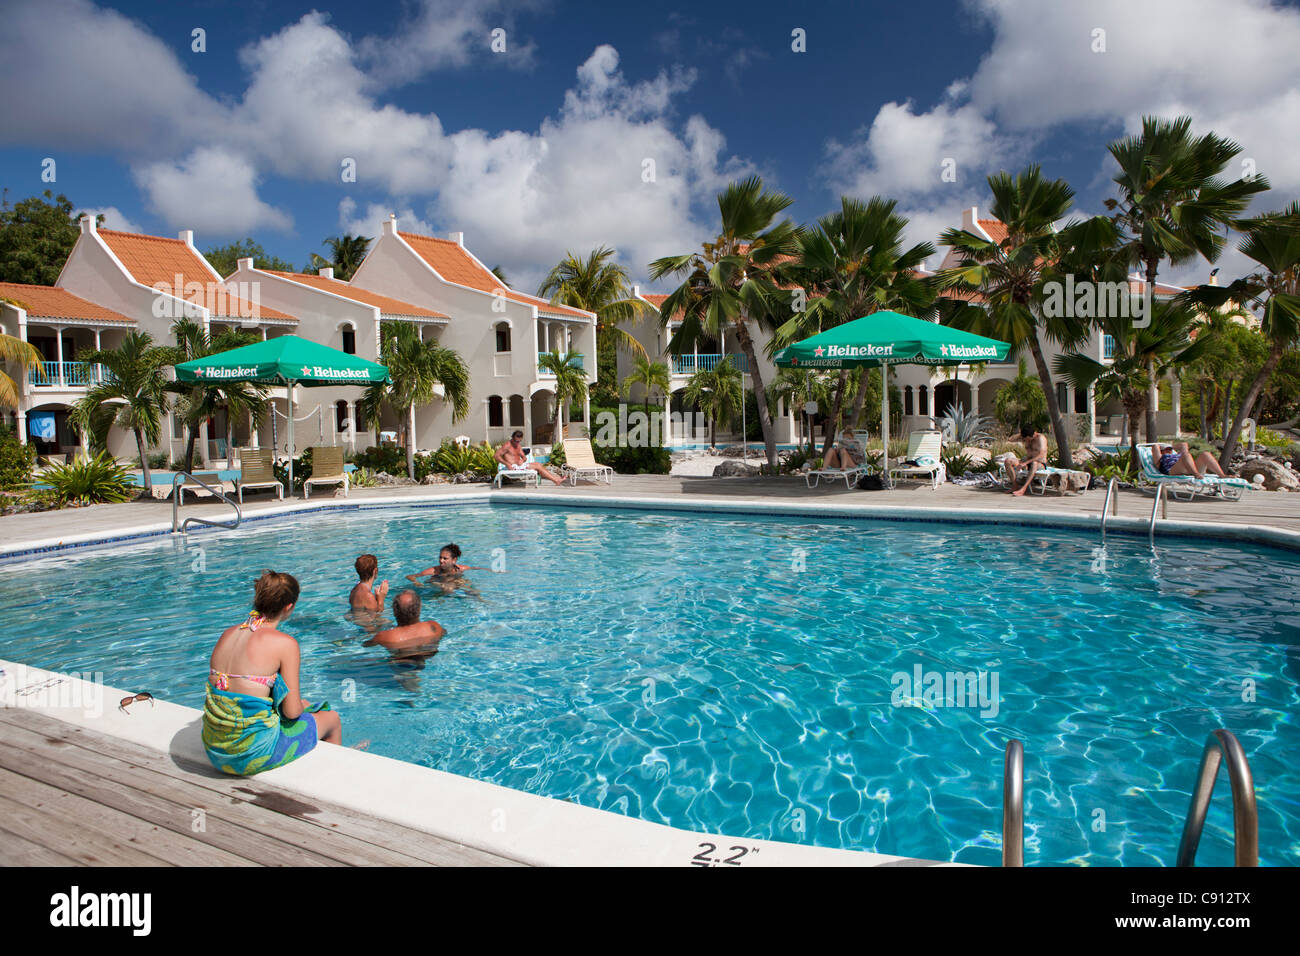 Les Pays-Bas, l'île de Bonaire, Antilles néerlandaises, Kralendijk, plongée sous-marine plage et l'hôtel. Piscine extérieure. Banque D'Images